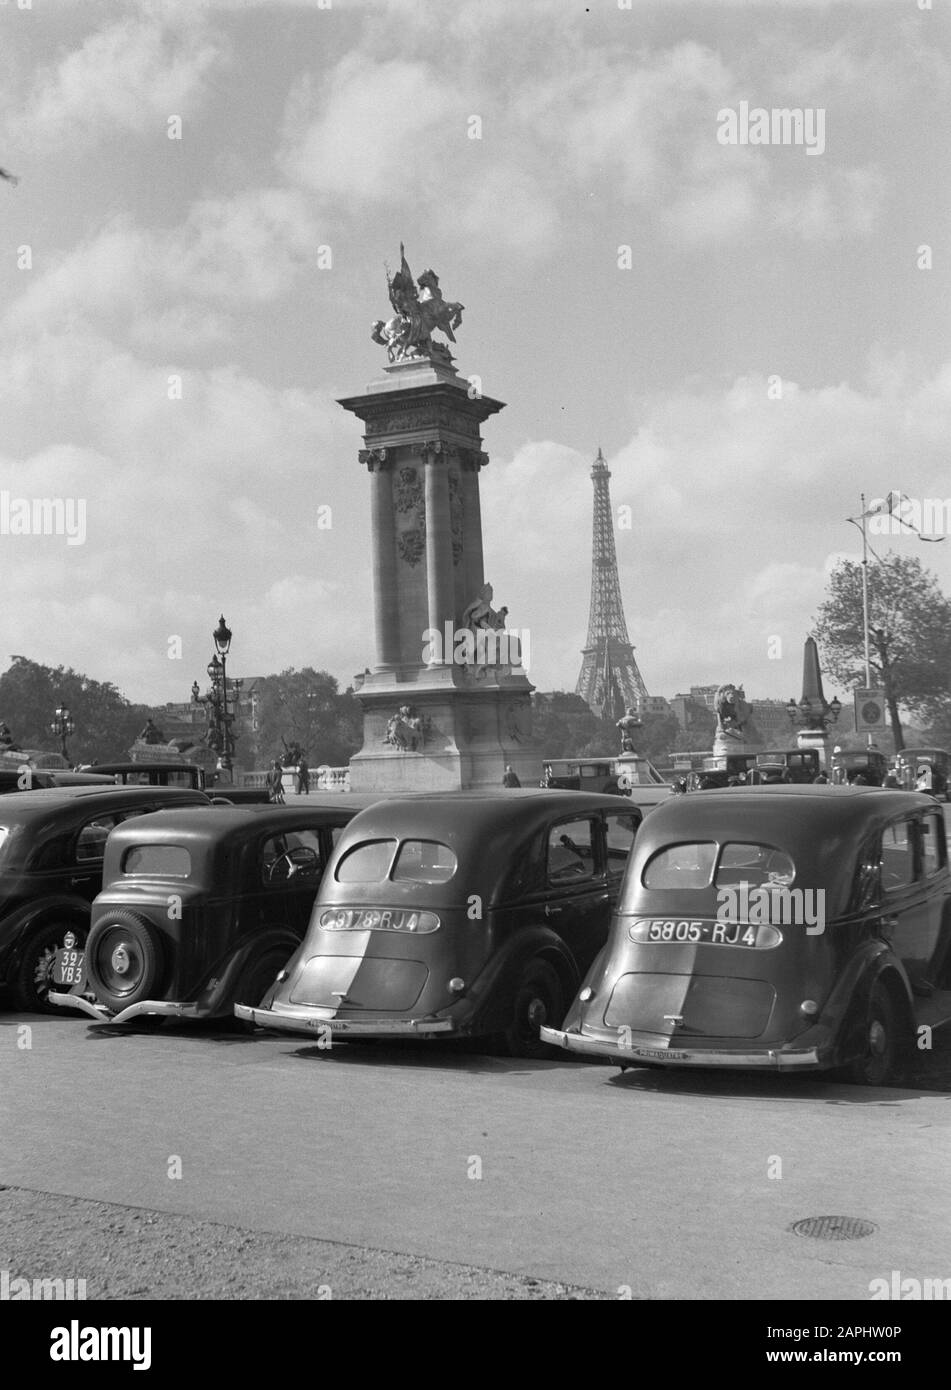 Reportage Paris Description: De Pont Alexandre III with in the background the Eiffel Tower Date: 1935 Location: France, Paris Keywords: cars, bridges, cityscapes Stock Photo